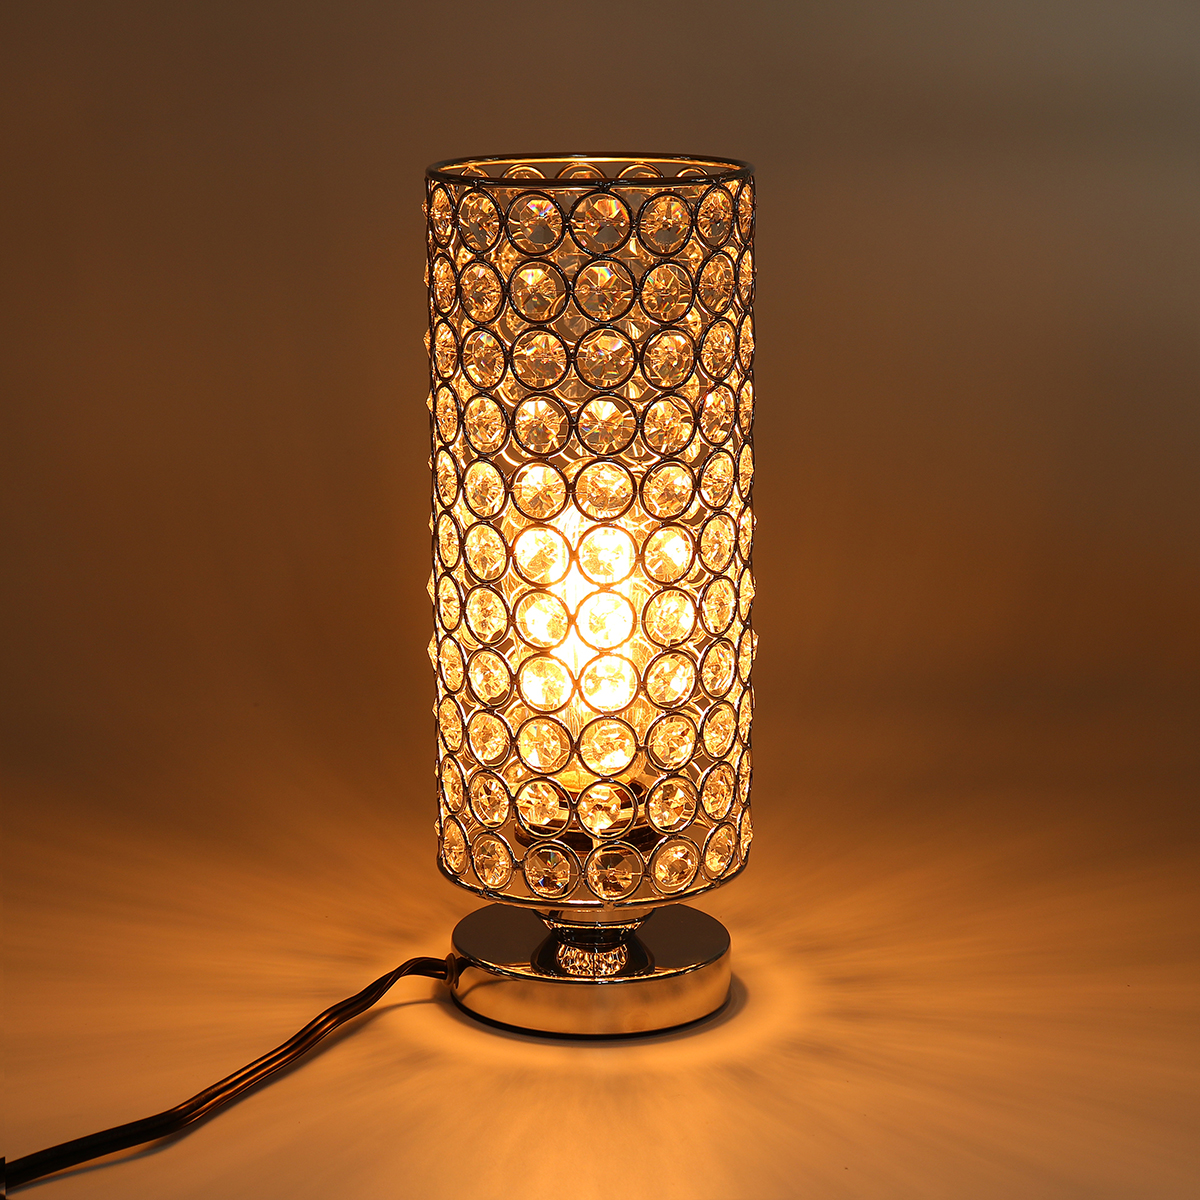 Modern-Design-Table-Lamp-Crystal-Dimmer-Lounge-Bedside-Table-Light-Home-E27E26-1693965-4